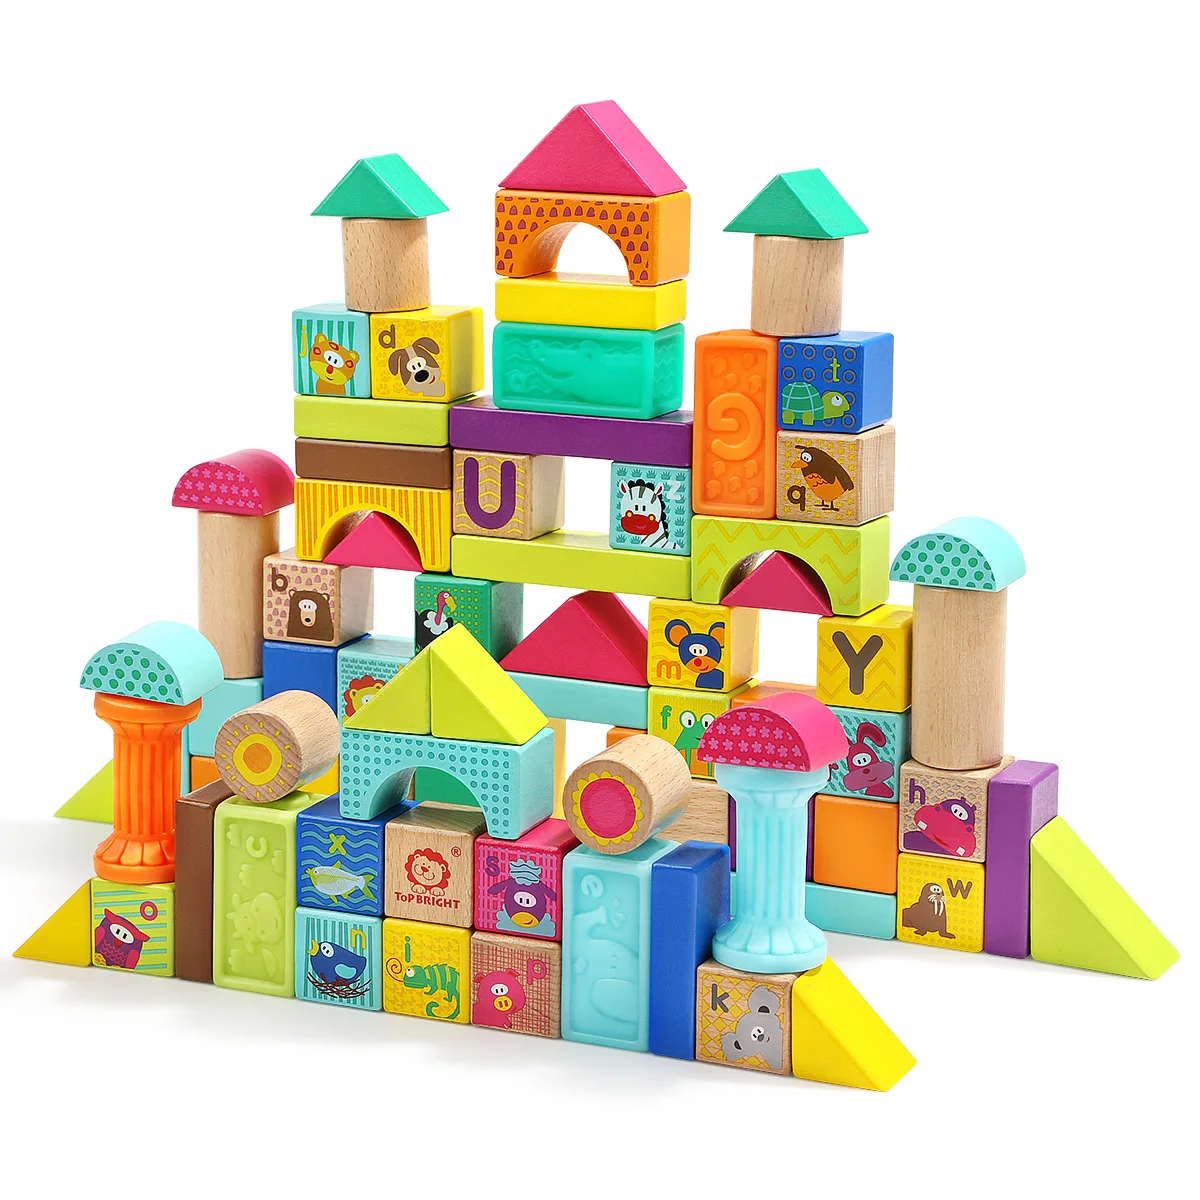 TOPBRIGHT в возрасте от 1 до 2 лет, детские деревянные строительные блоки, деревянные сборные игрушки, развивающие игрушки для мальчиков 3-6 лет